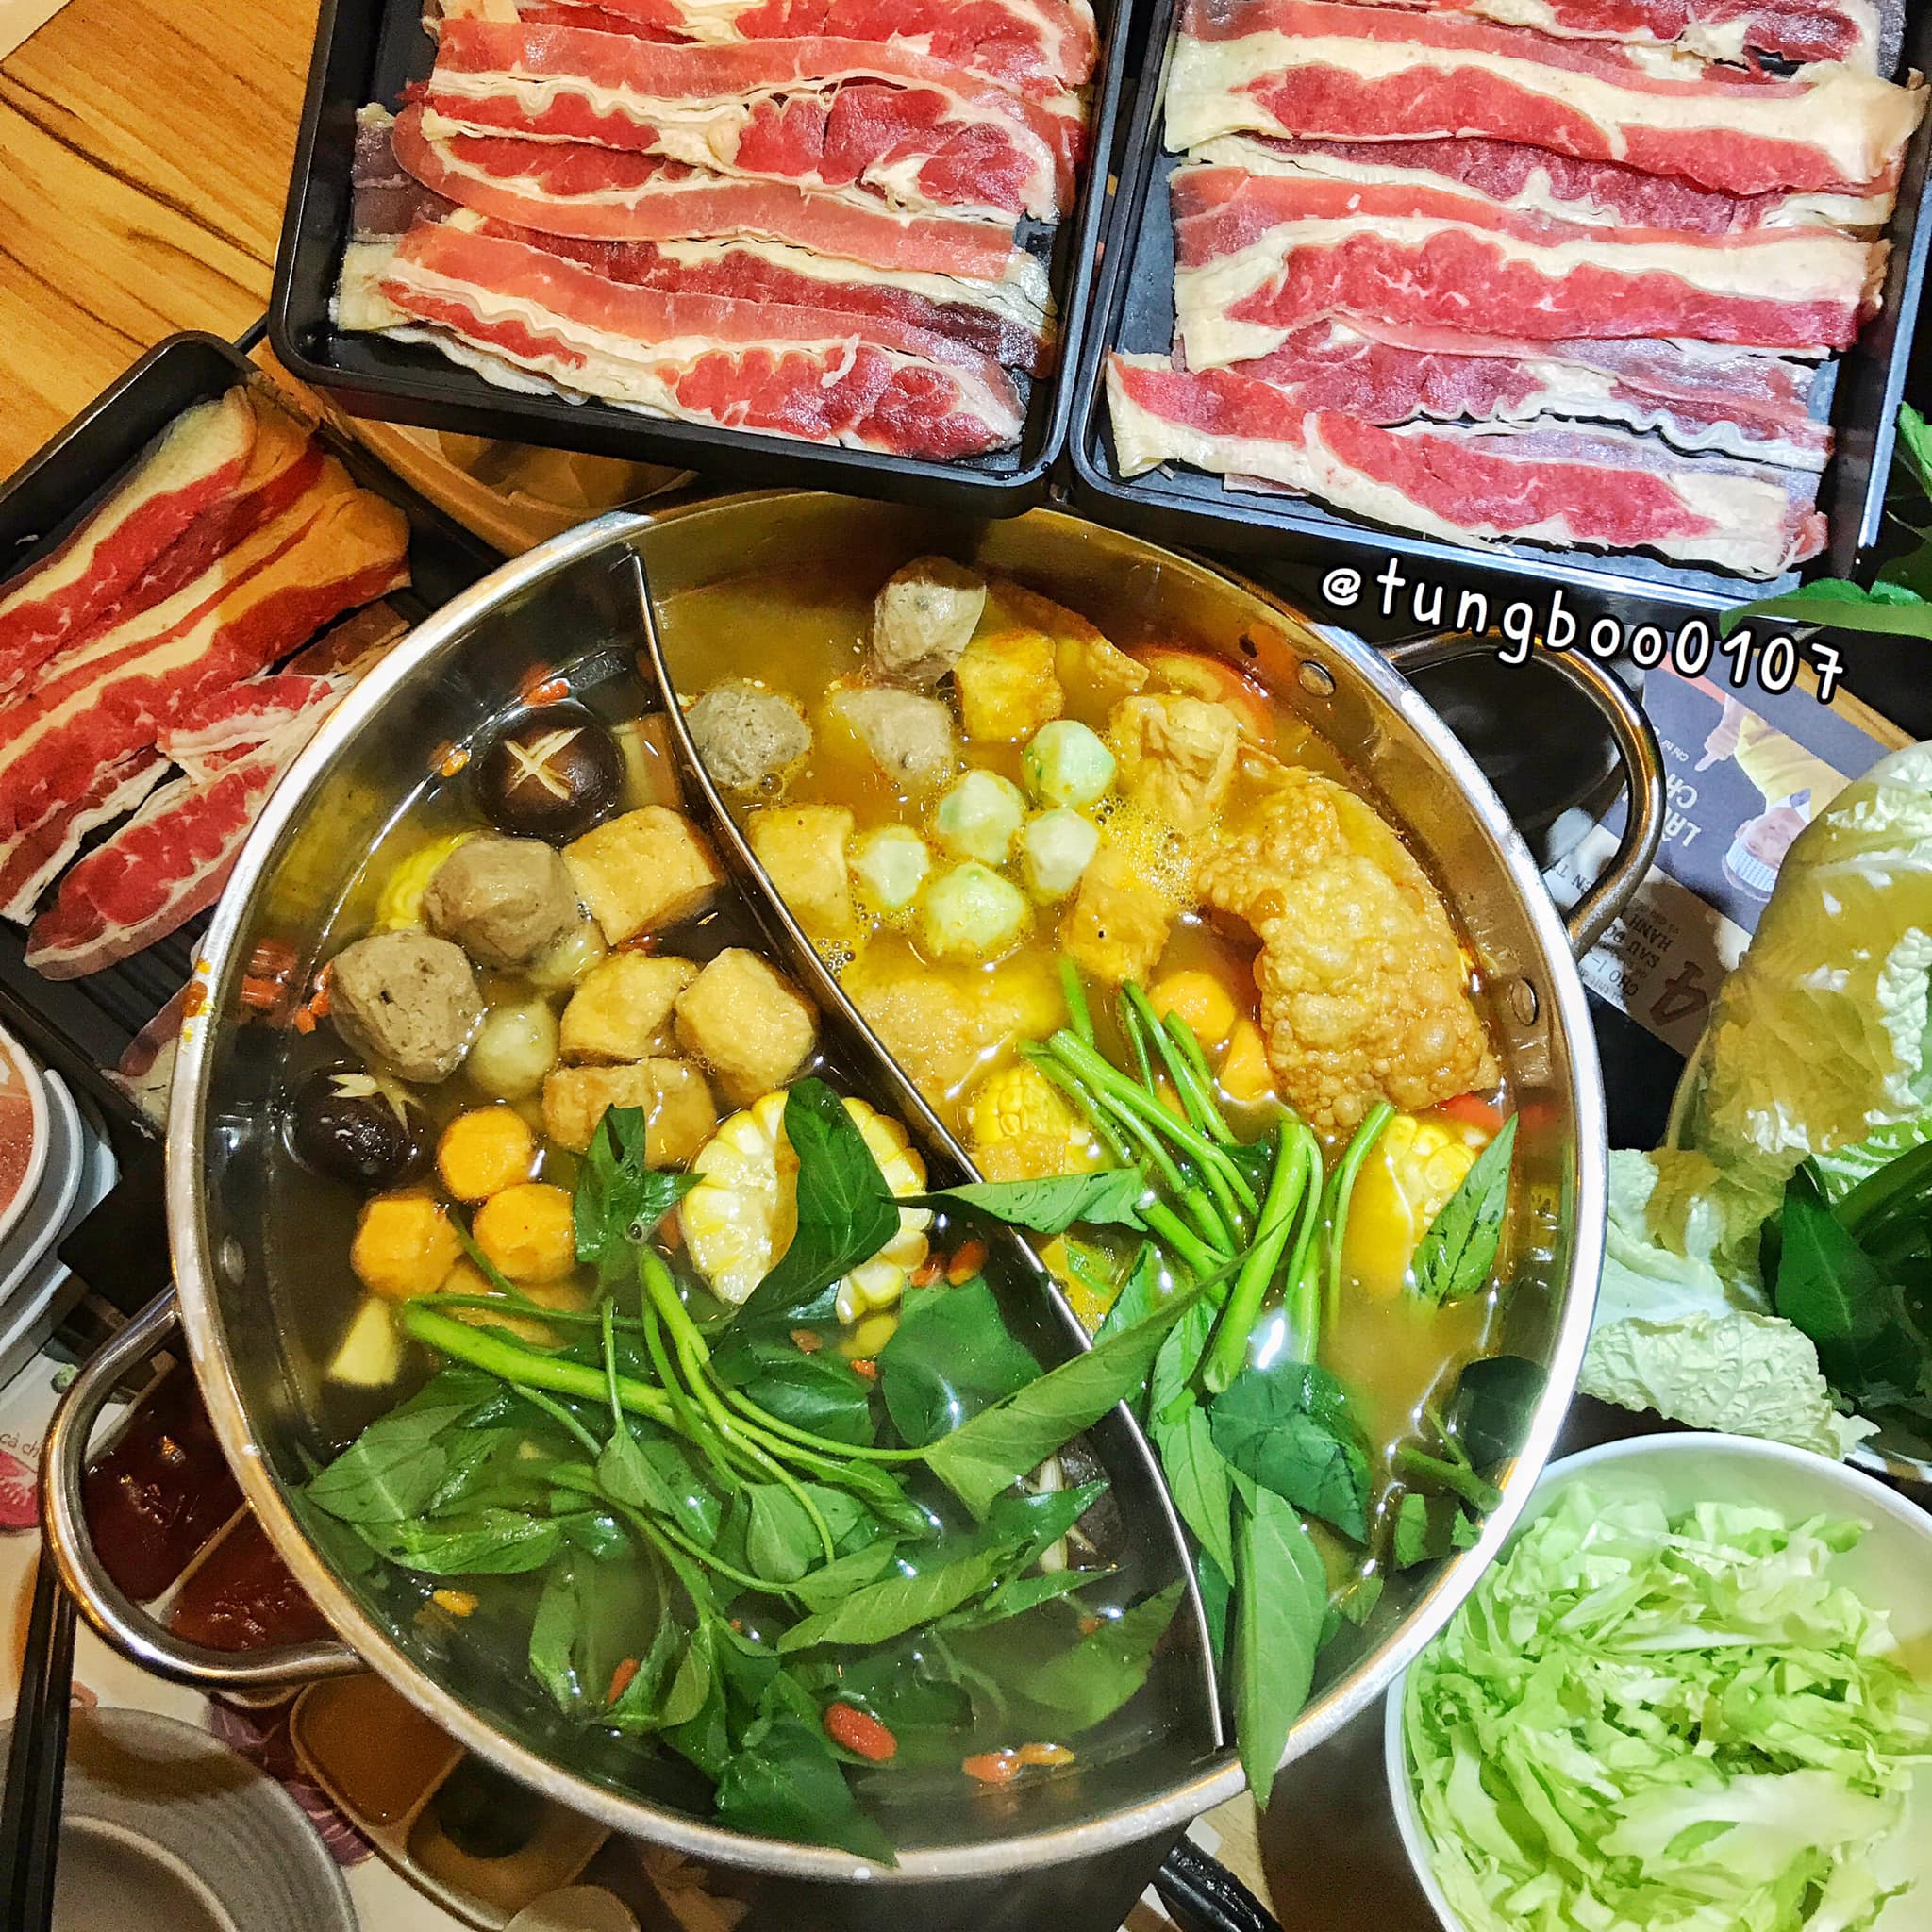 Food House – 230 Xã Đàn, Đống Đa